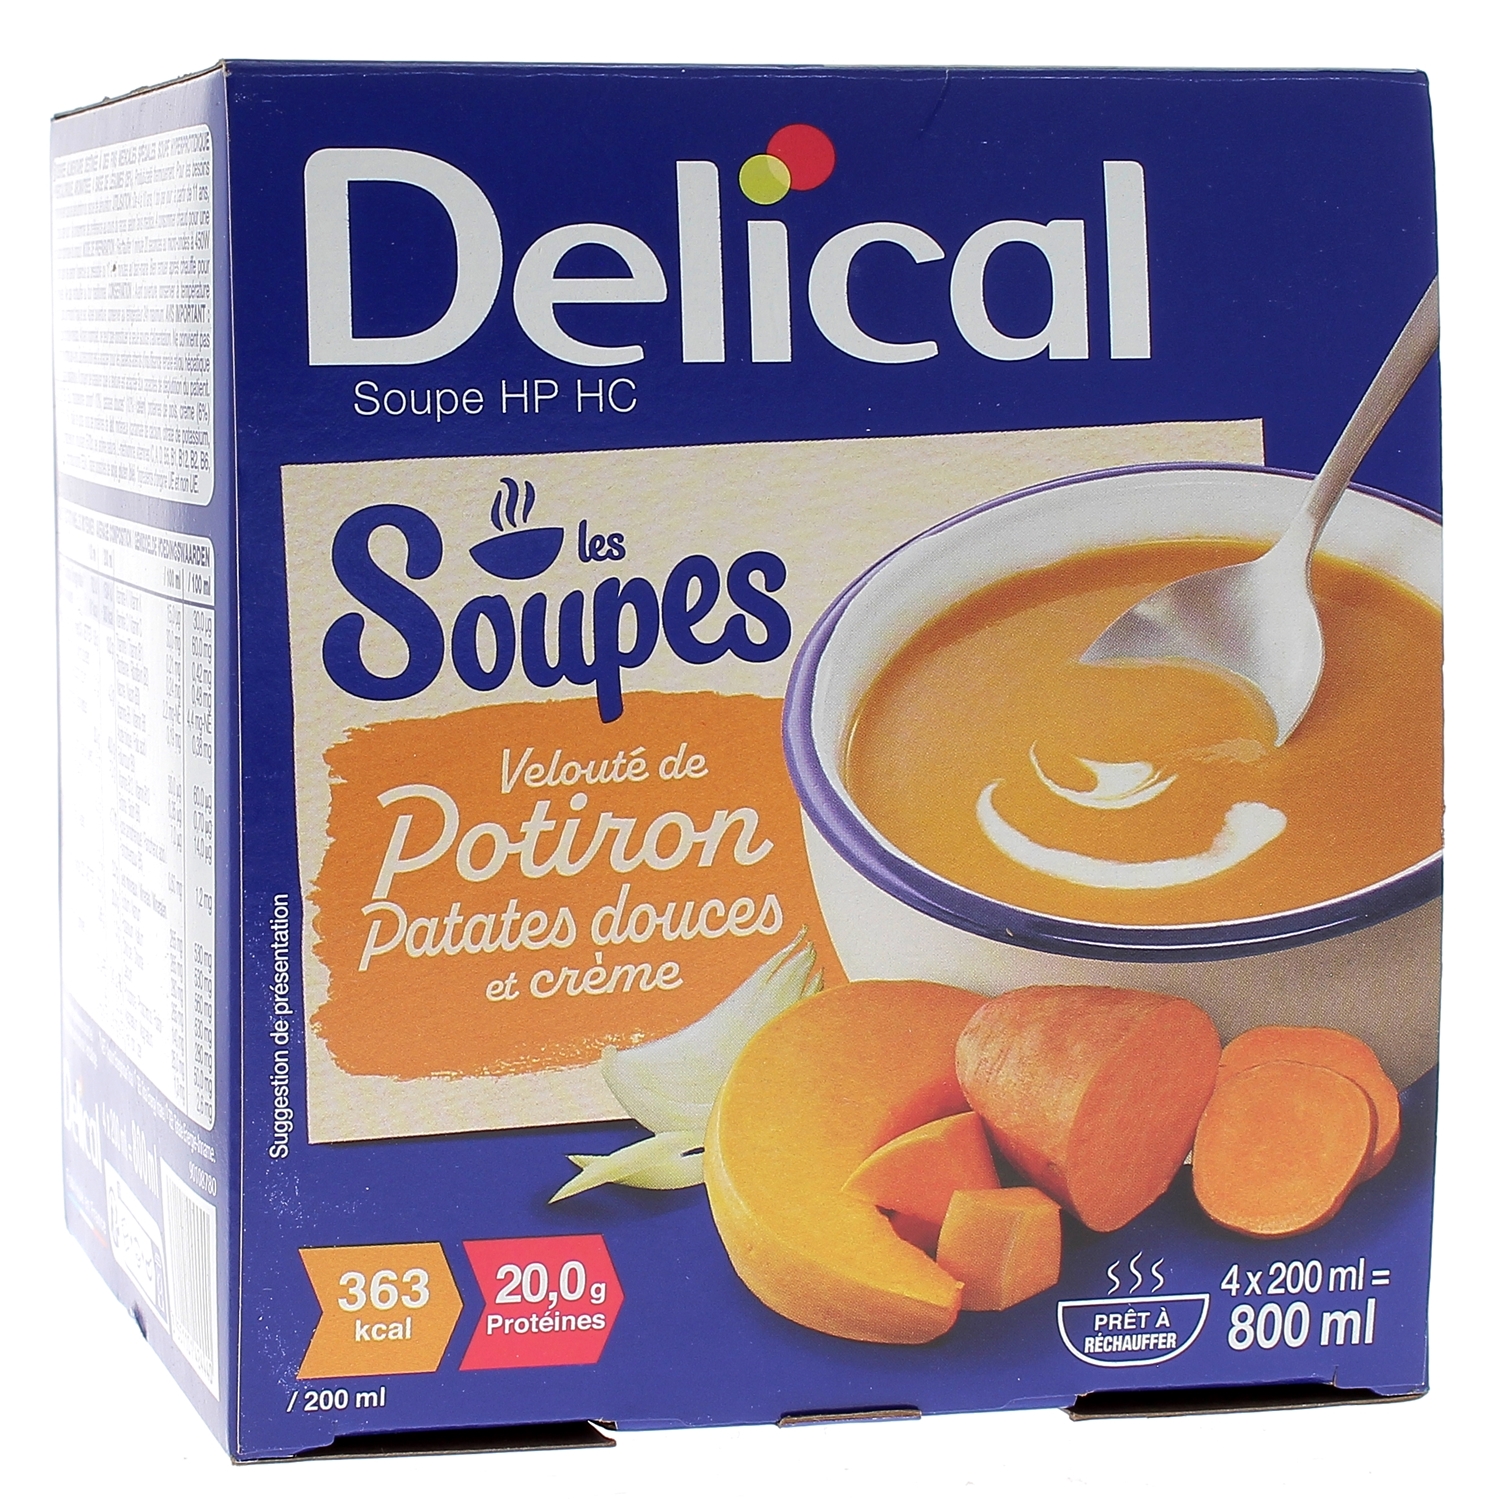 Delical Soupe HP/HC Velouté de potiron patates douces et crème - 4 bols de 200ml